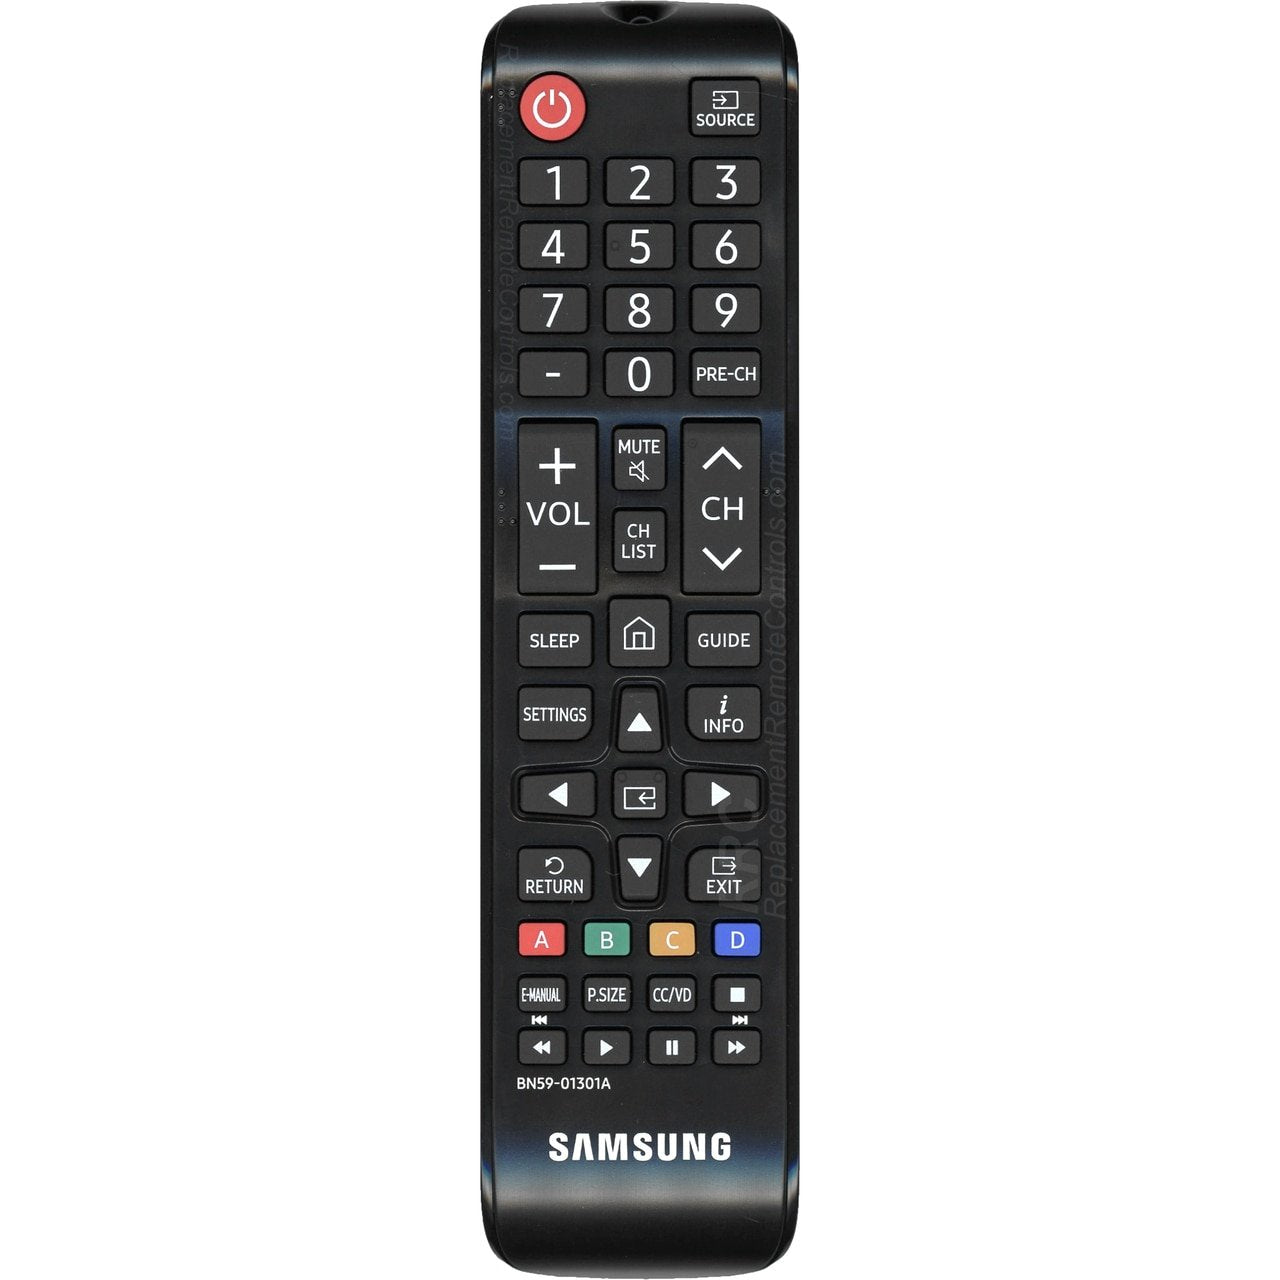 Samsung BN59-01301A LED TV Remote Control for N5300, NU6900, NU7100, NU7300 (2018 Models)